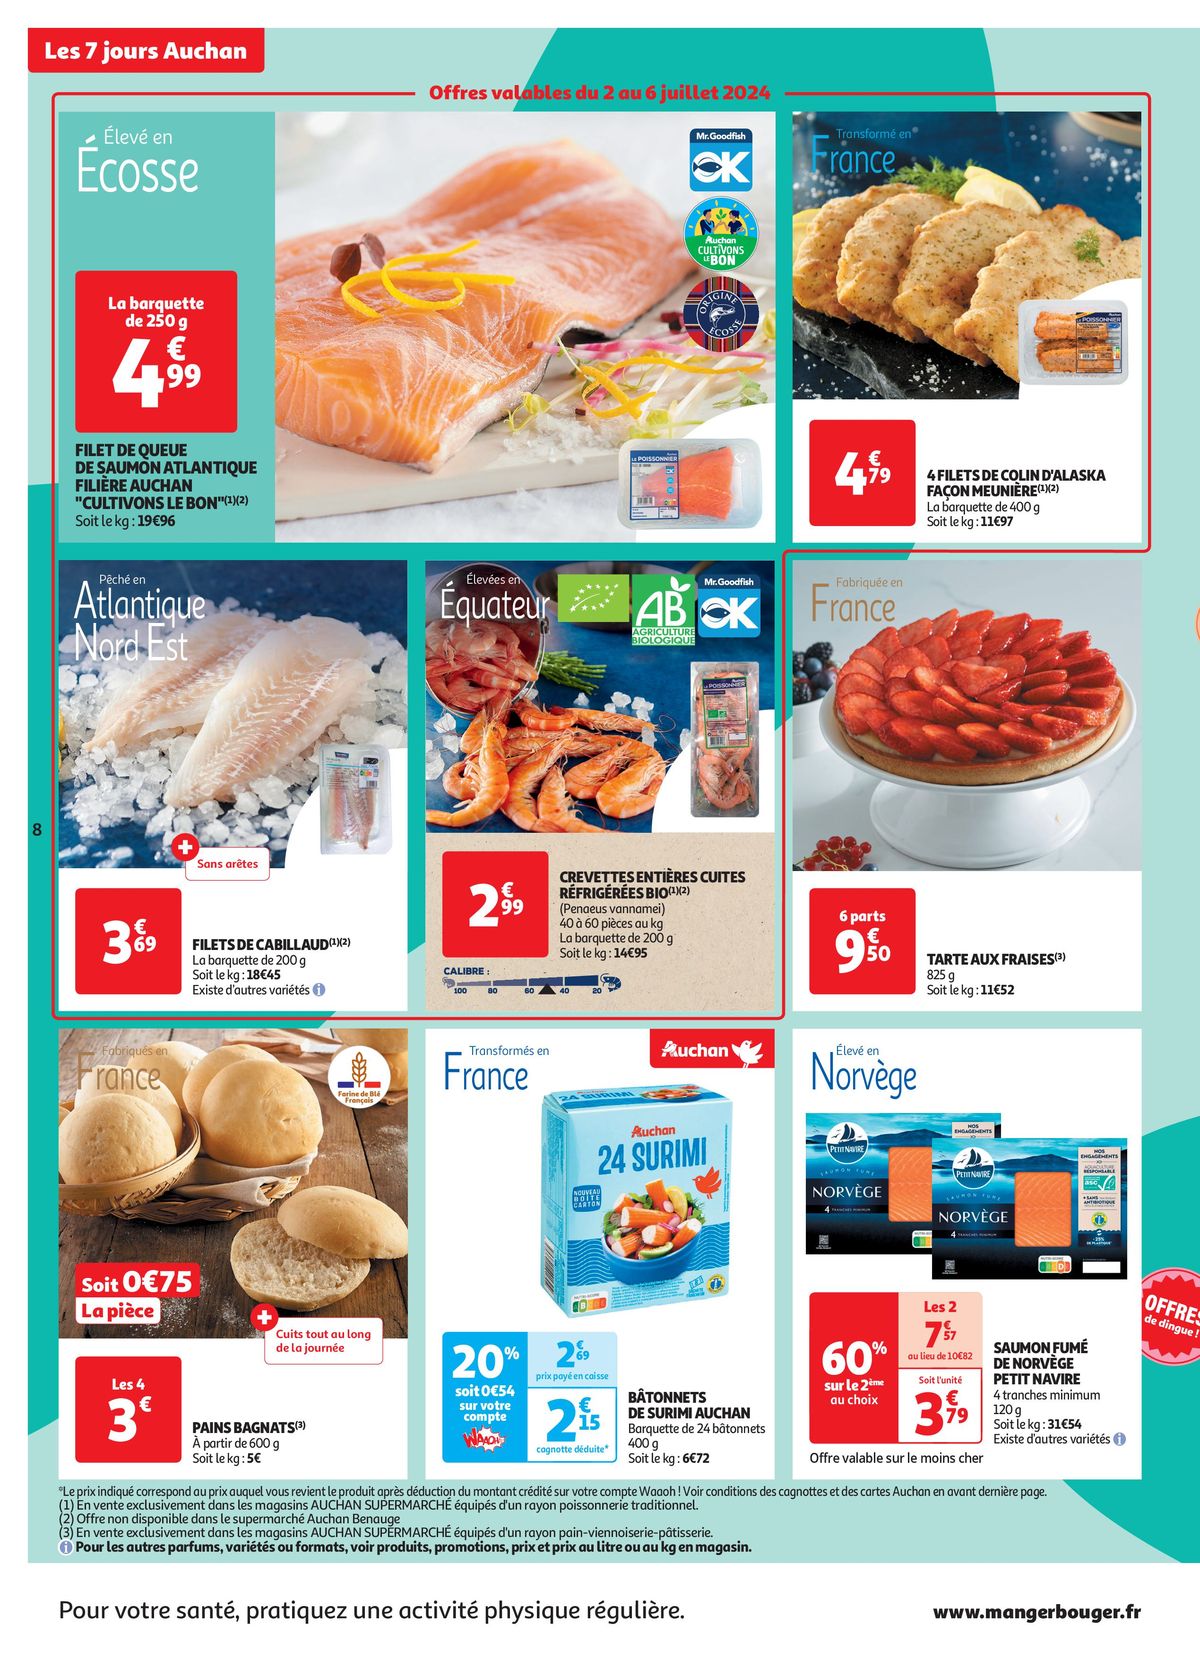 Catalogue C'est les 7 jours Auchan dans votre super !, page 00008